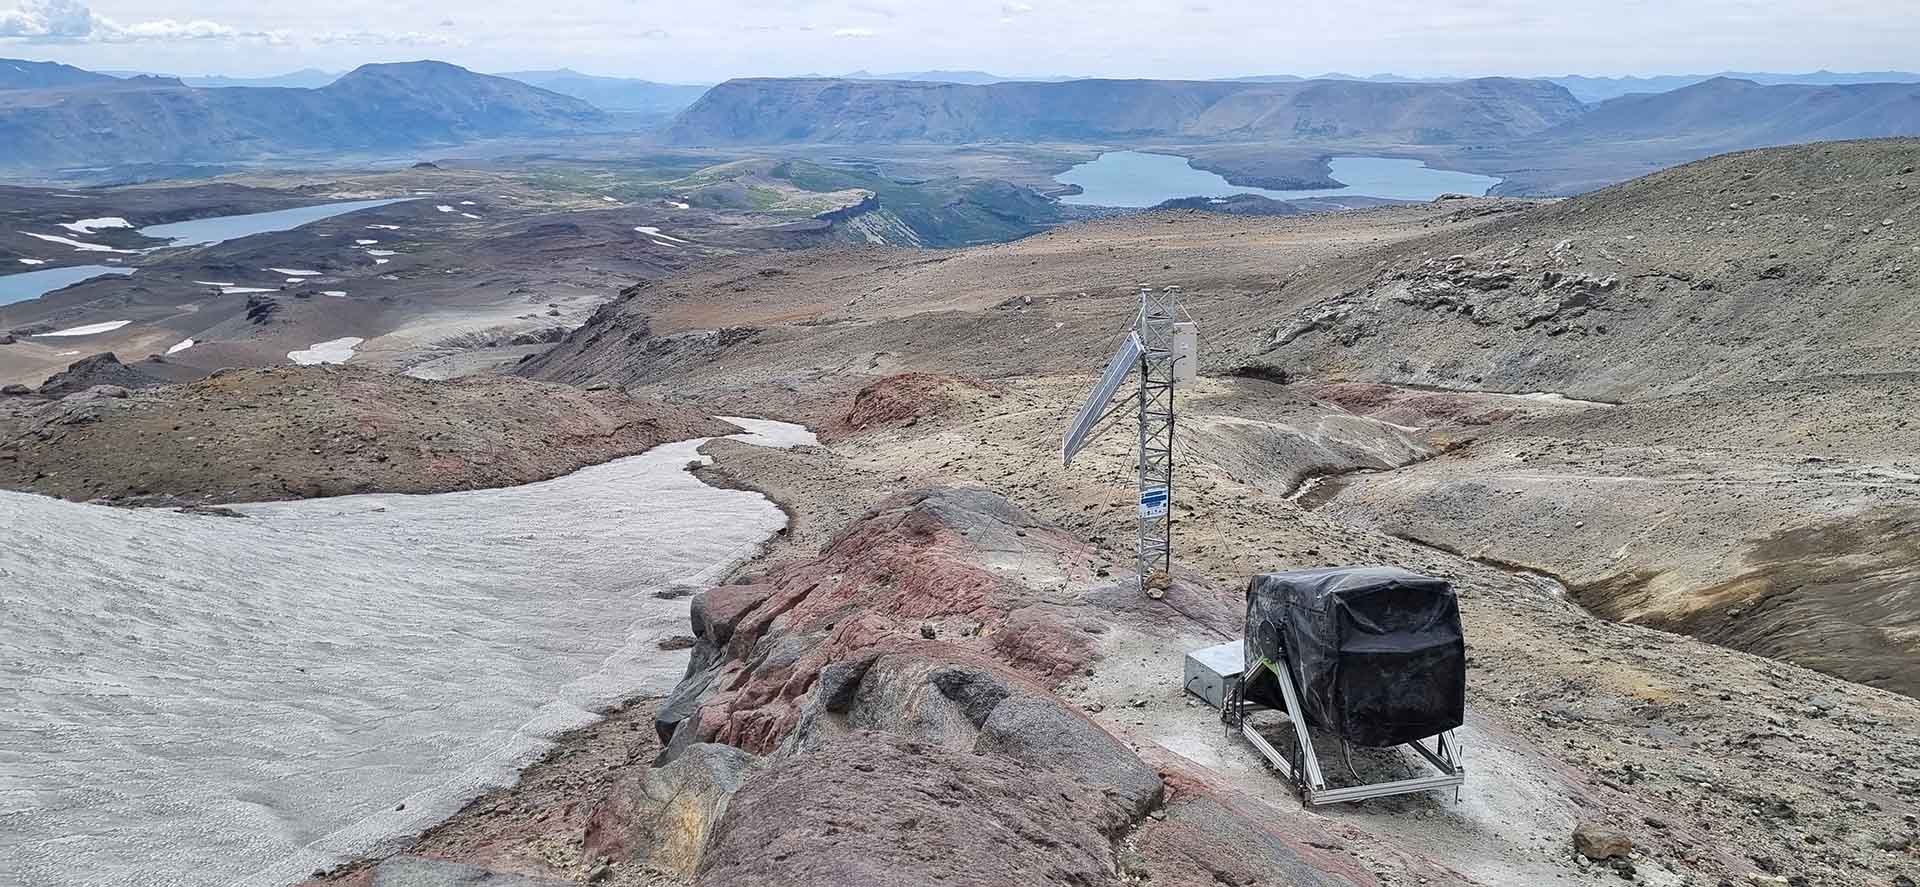 Telescopio de Muones instalado sobre las laderas del volcán Copahue, donde permanecerá por los próximos dos años registrando datos que posibilitarán realizar una “radiografía” del cráter del volcán.